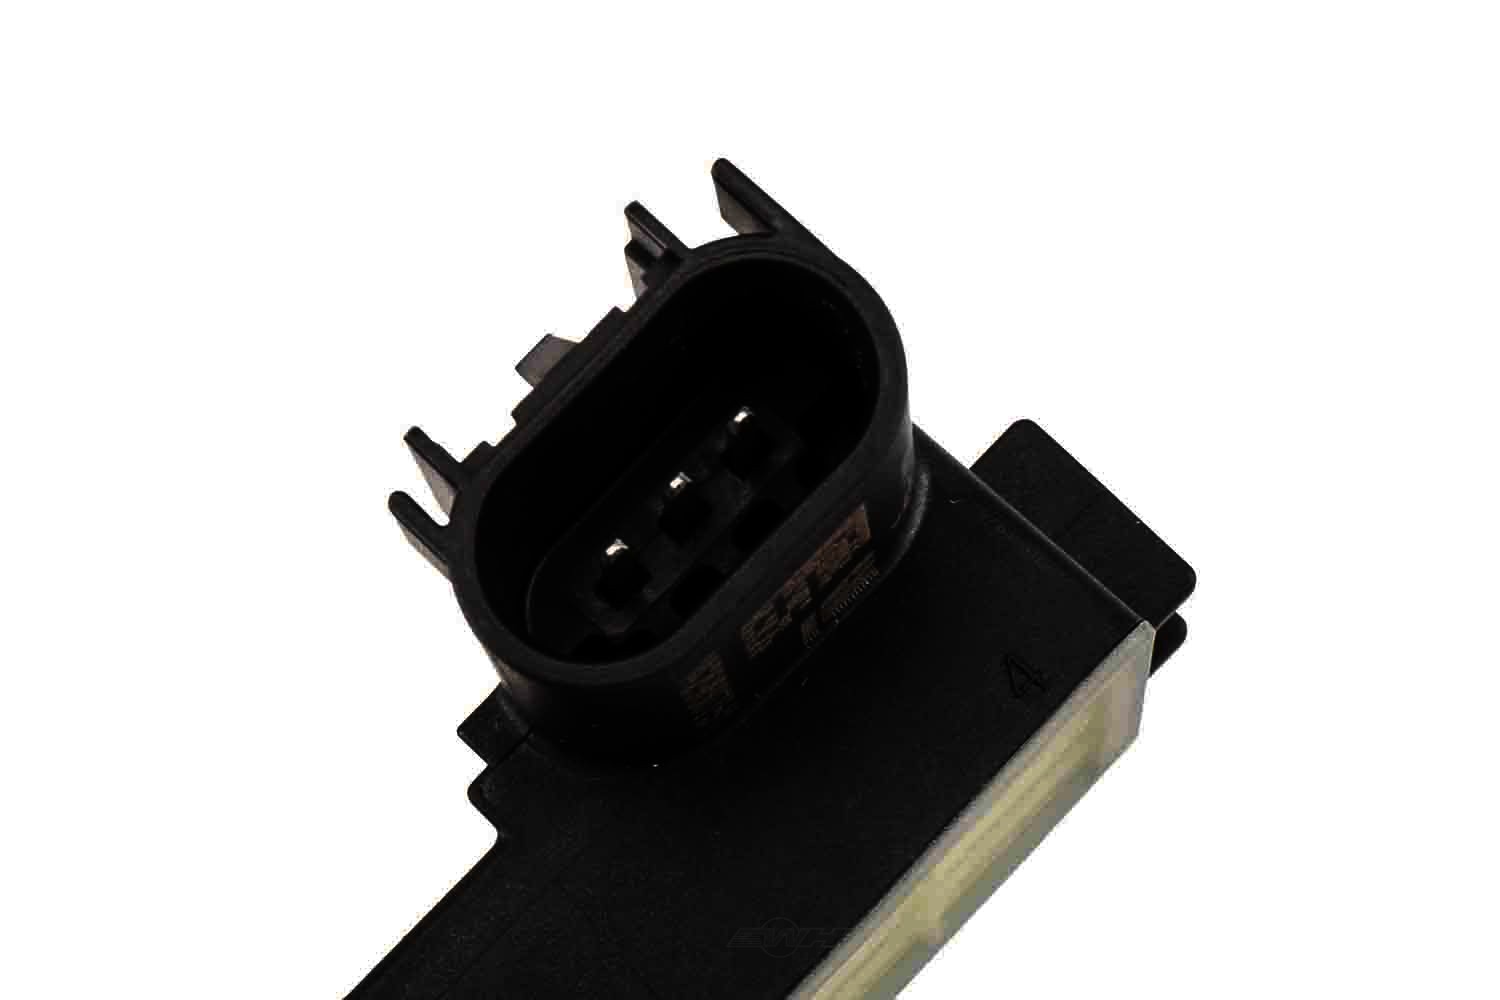 ACDELCO GM ORIGINAL EQUIPMENT - Flex Fuel Sensor - DCB 13577429